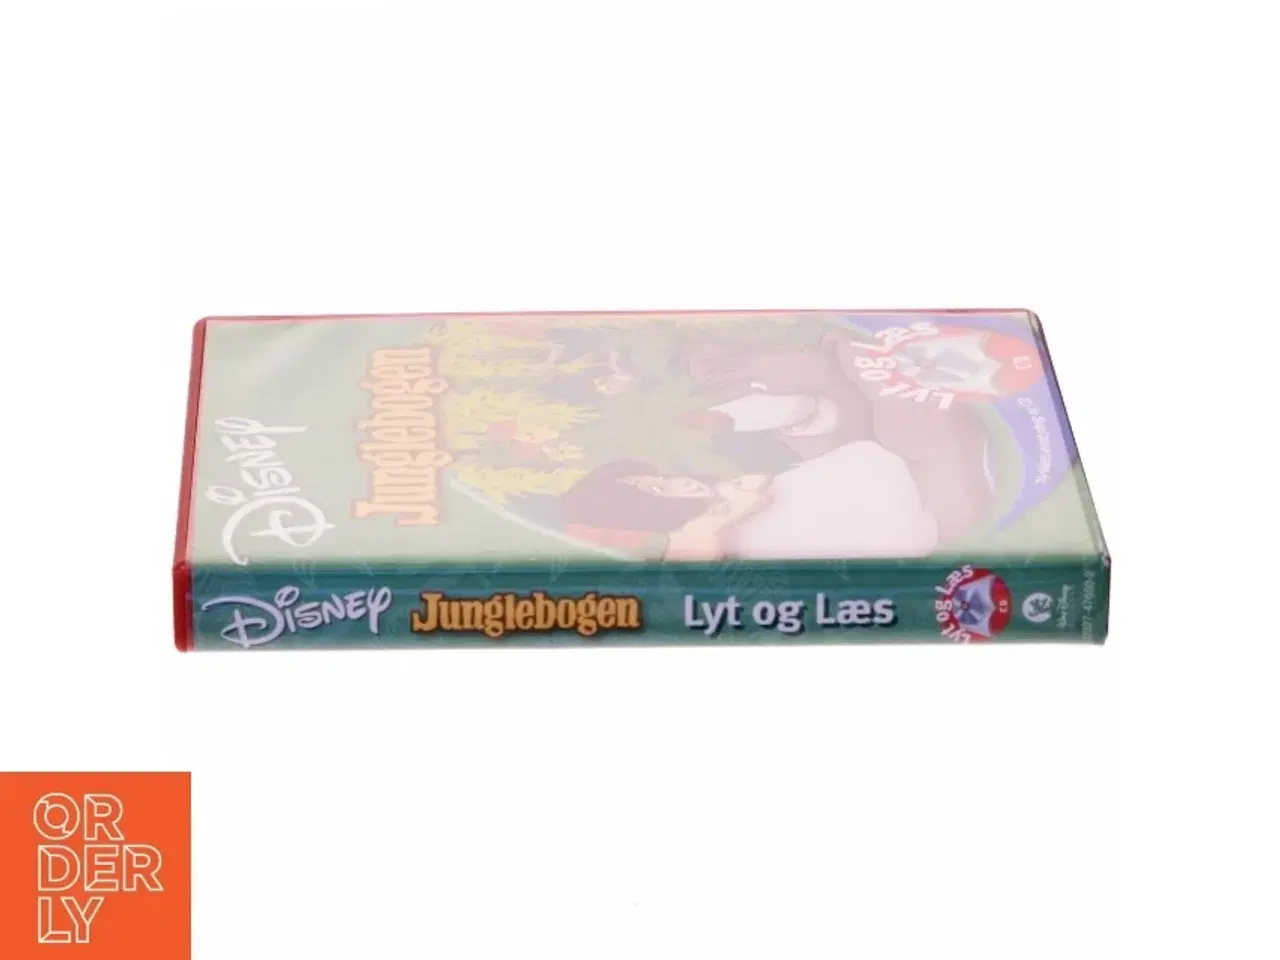 Billede 2 - Lyt og læs - Junglebogen fra Disney